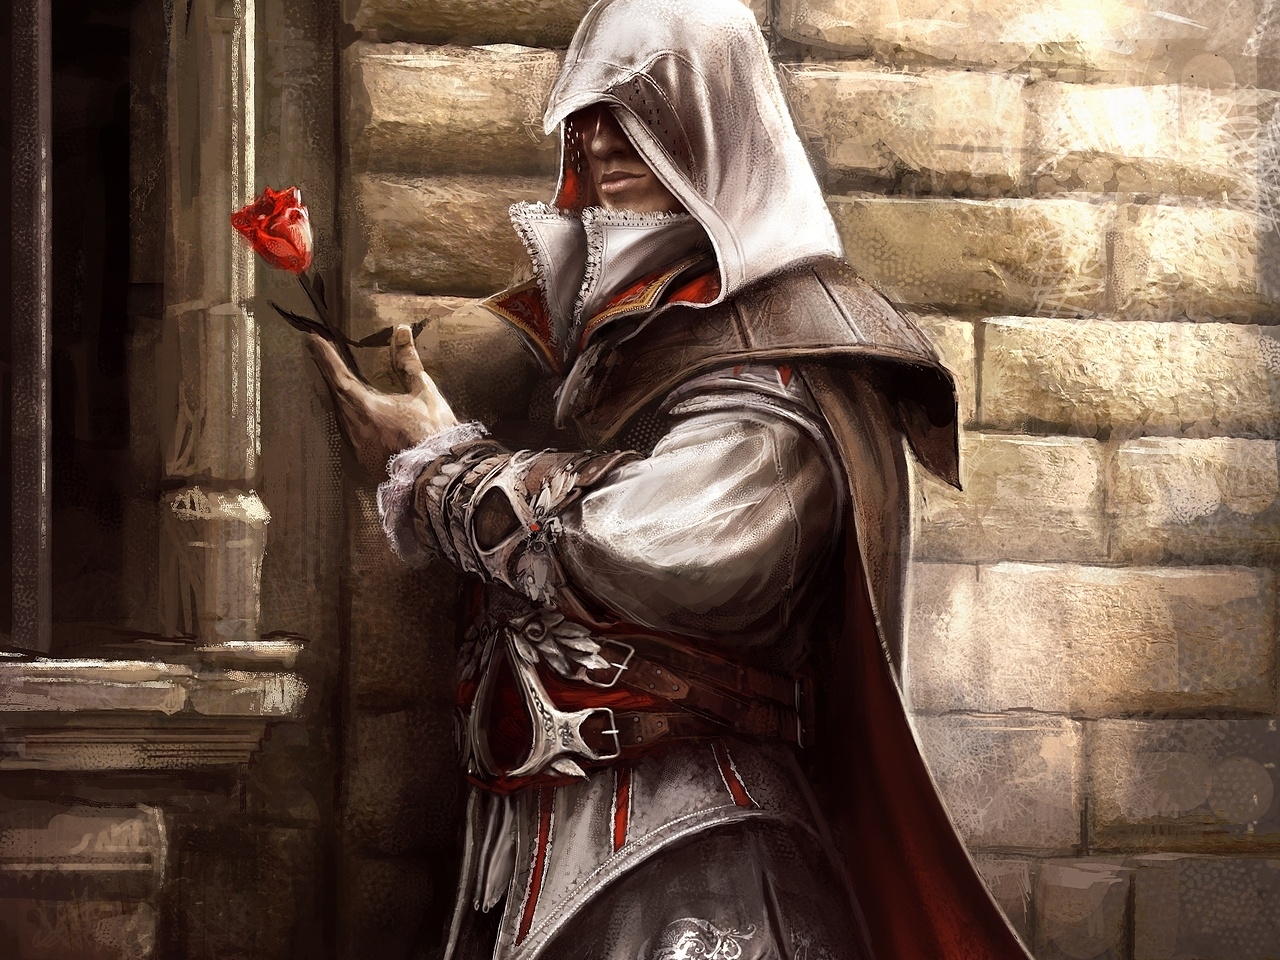 Скачать картинку Кредо Убийцы (Assassin's Creed), Игры в телефон бесплатно.